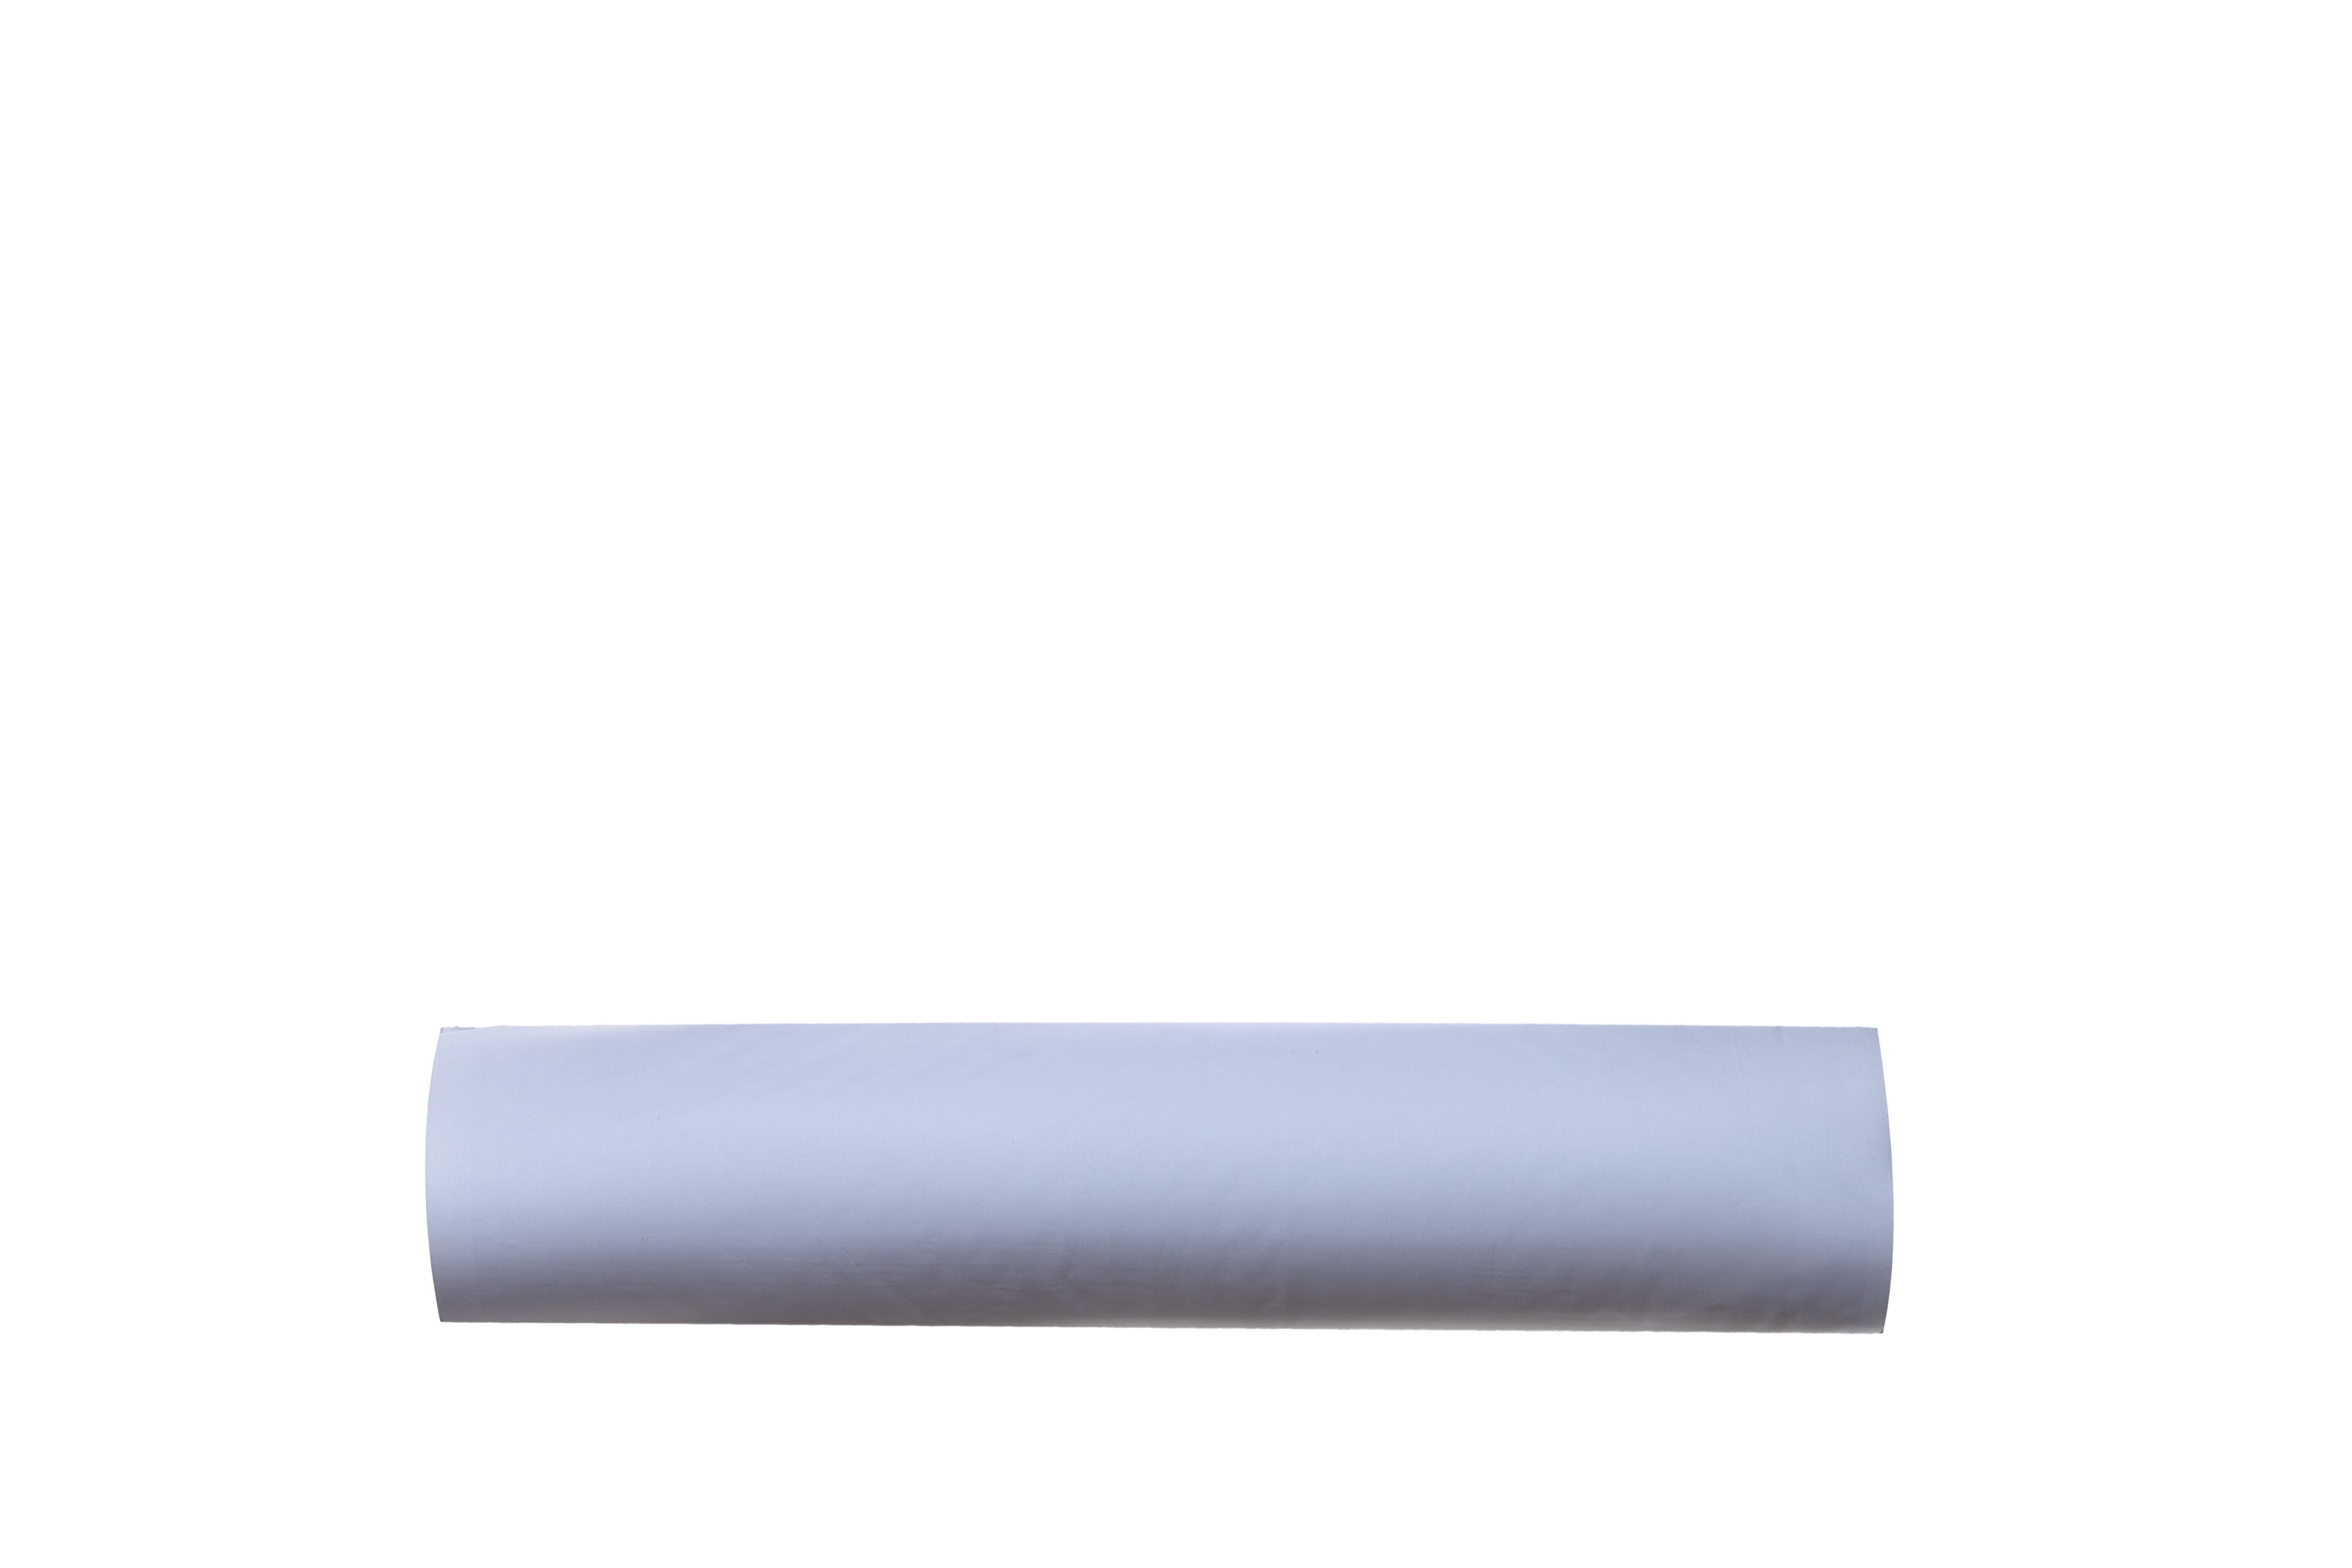 Completo lenzuoline lenzuola stampa fantasia 100% cotone made in italy per culla compatibile cosleeping lettino bimbo bimba bimbi ORSETTI AZZURRO - SmartDecoHome